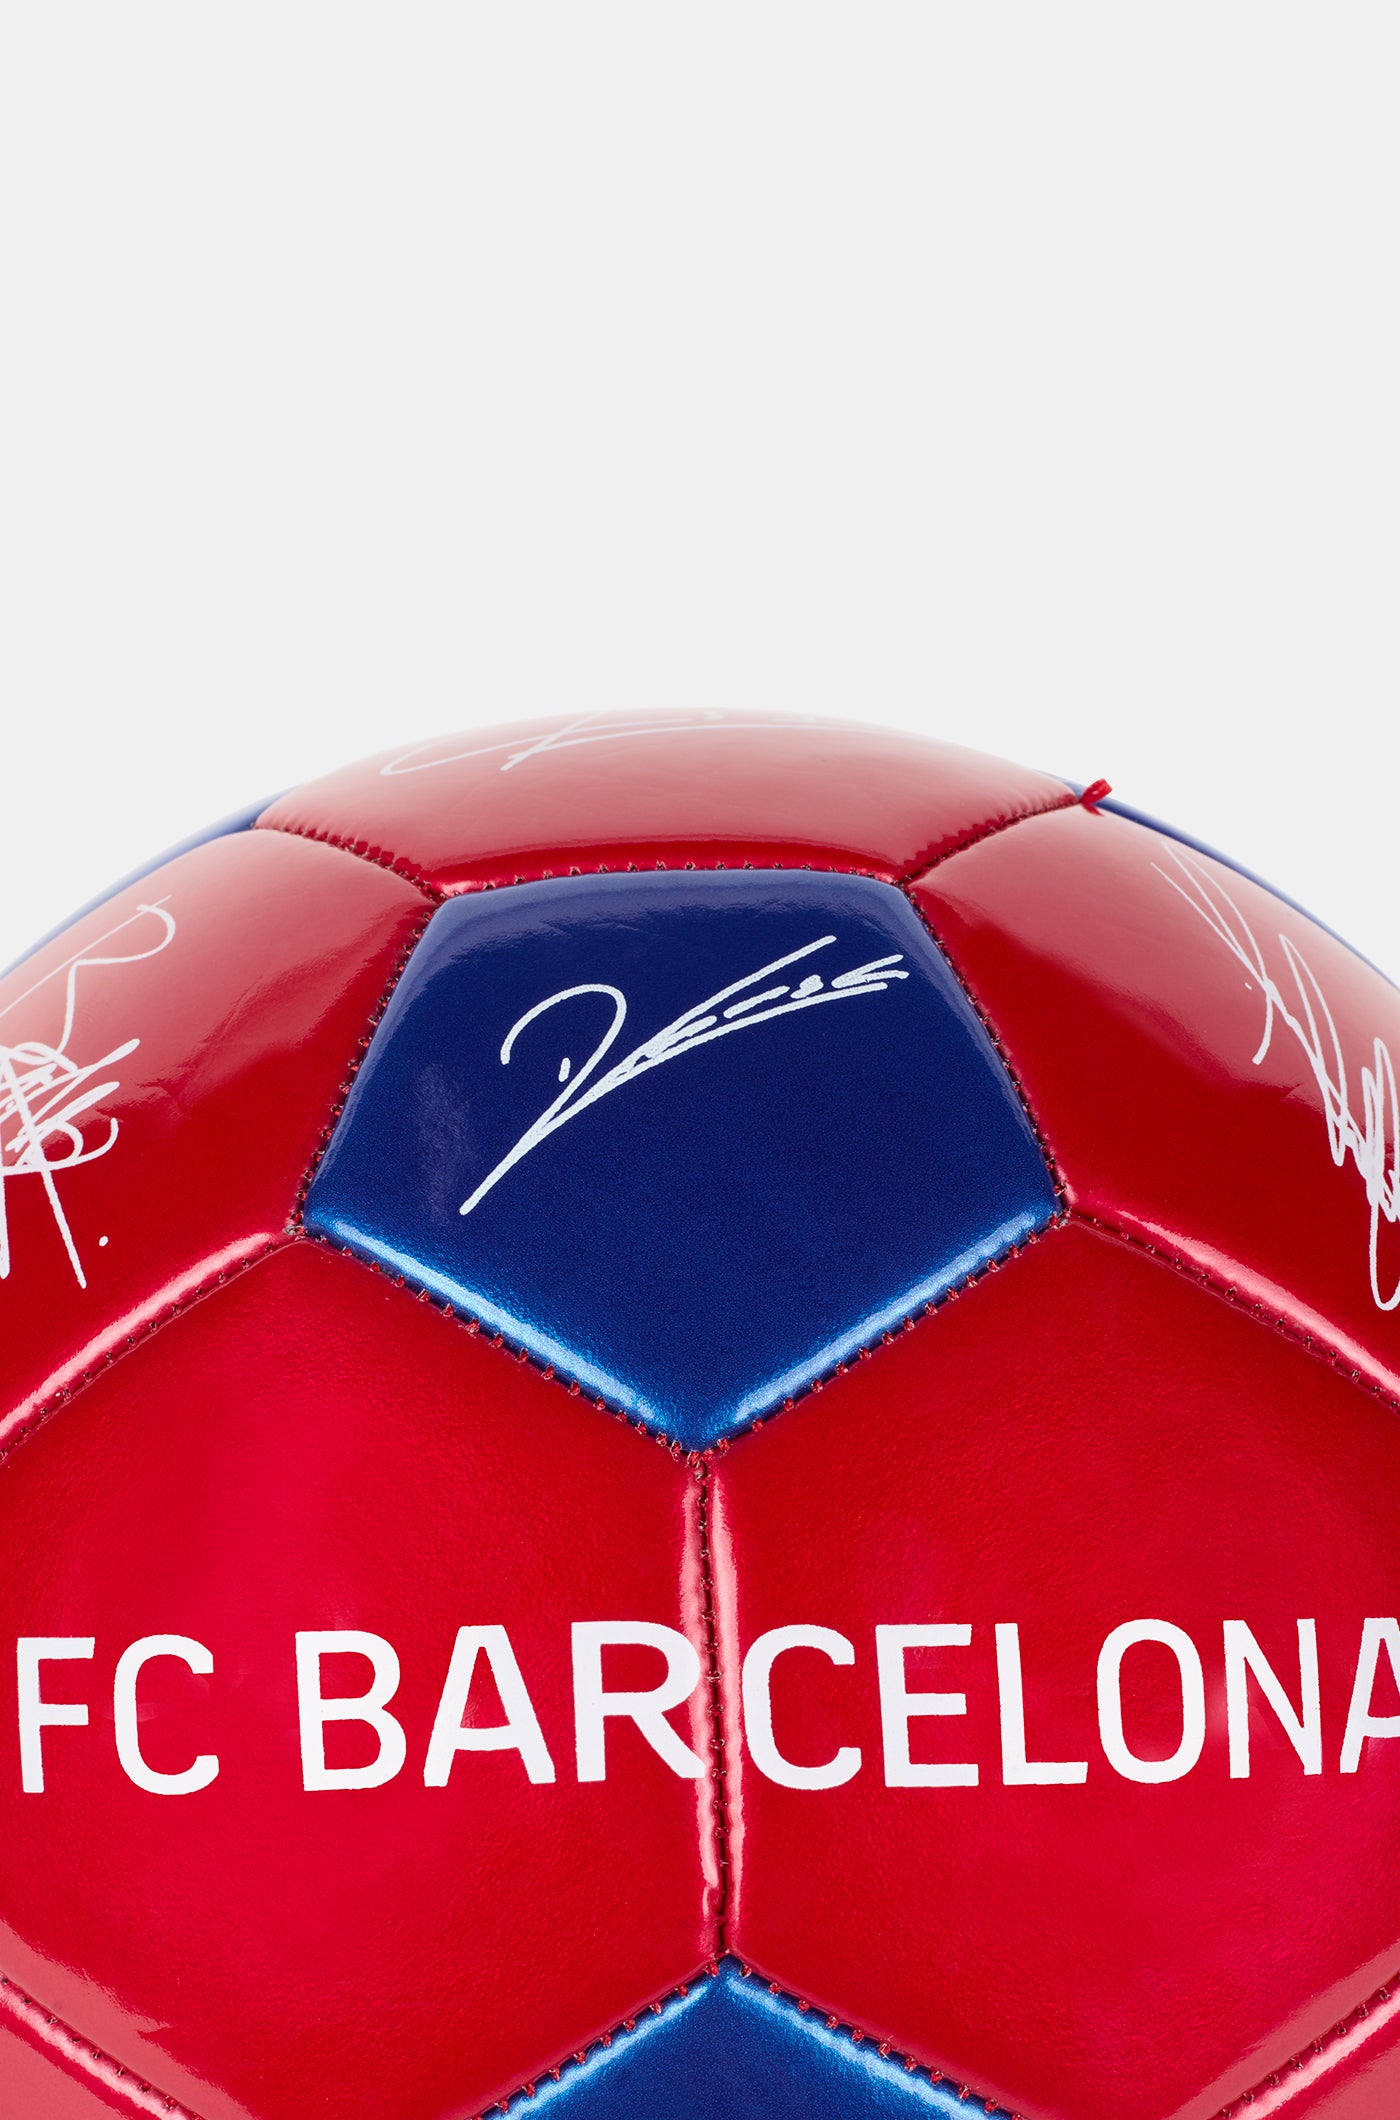 Balón FC Barcelona - Grande 